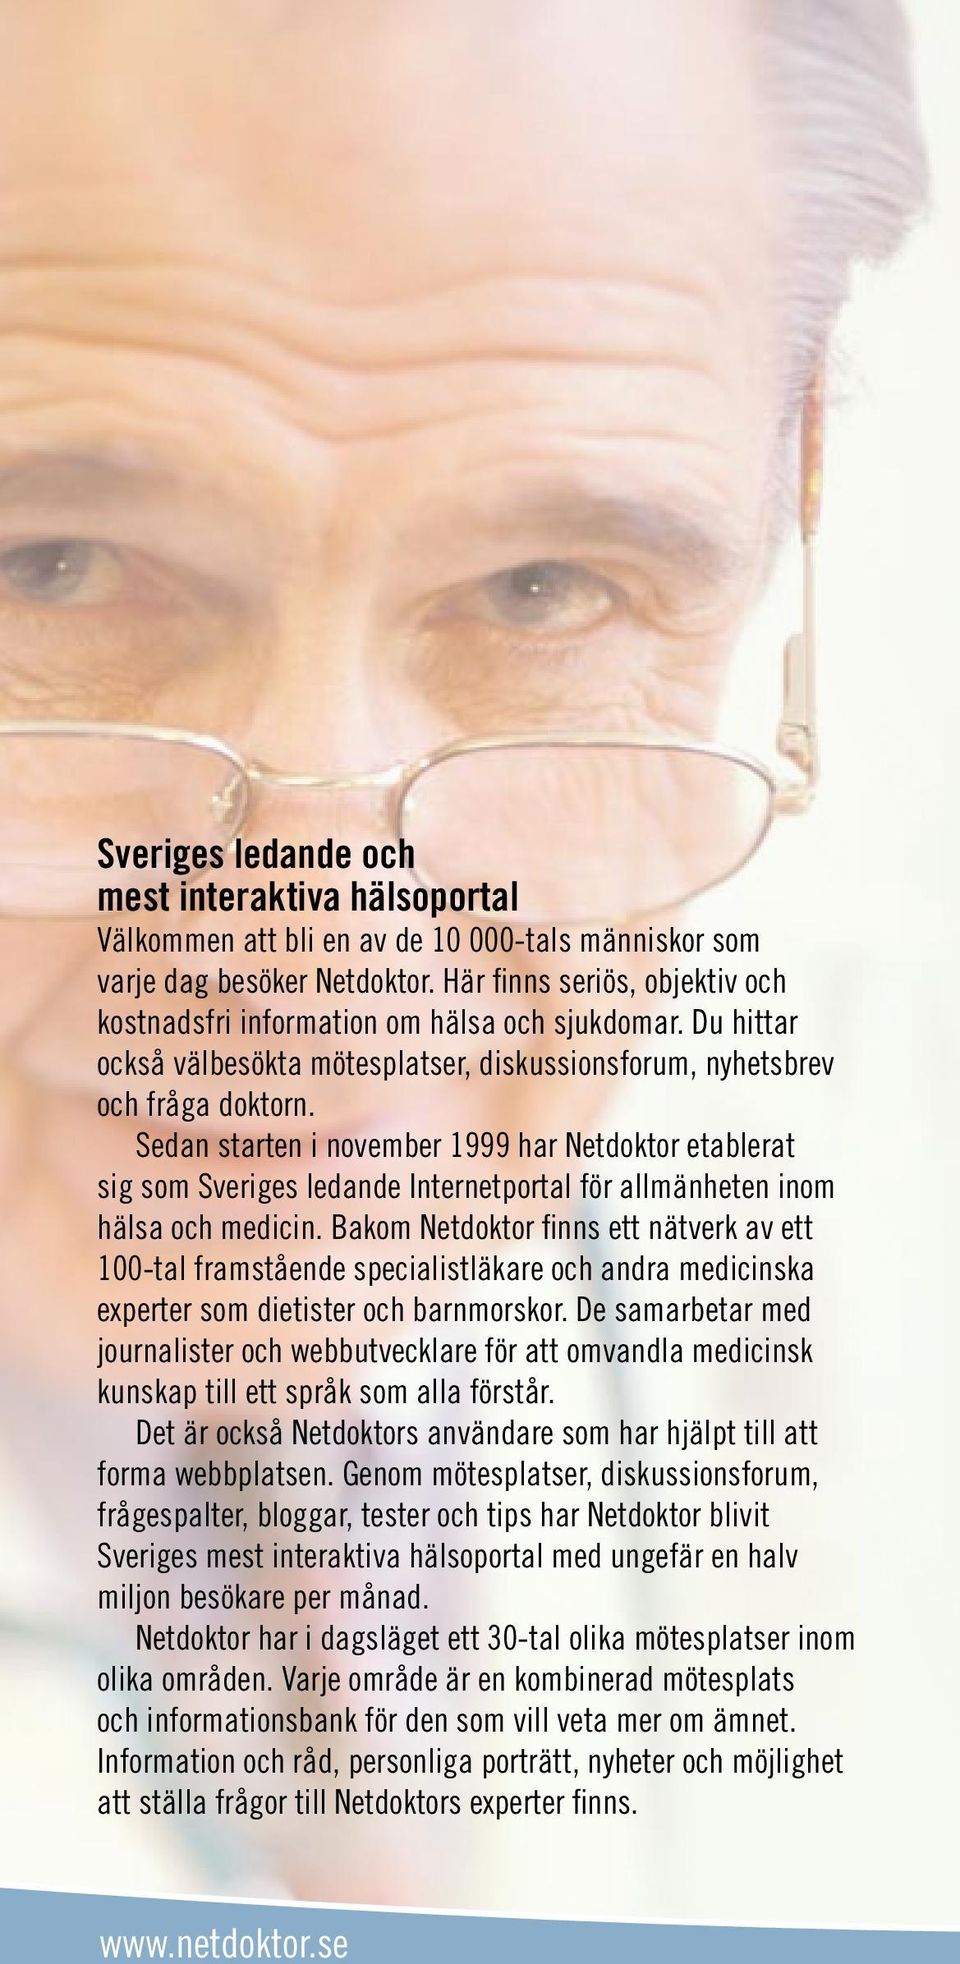 Sedan starten i november 1999 har Netdoktor etablerat sig som Sveriges ledande Internetportal för allmänheten inom hälsa och medicin.